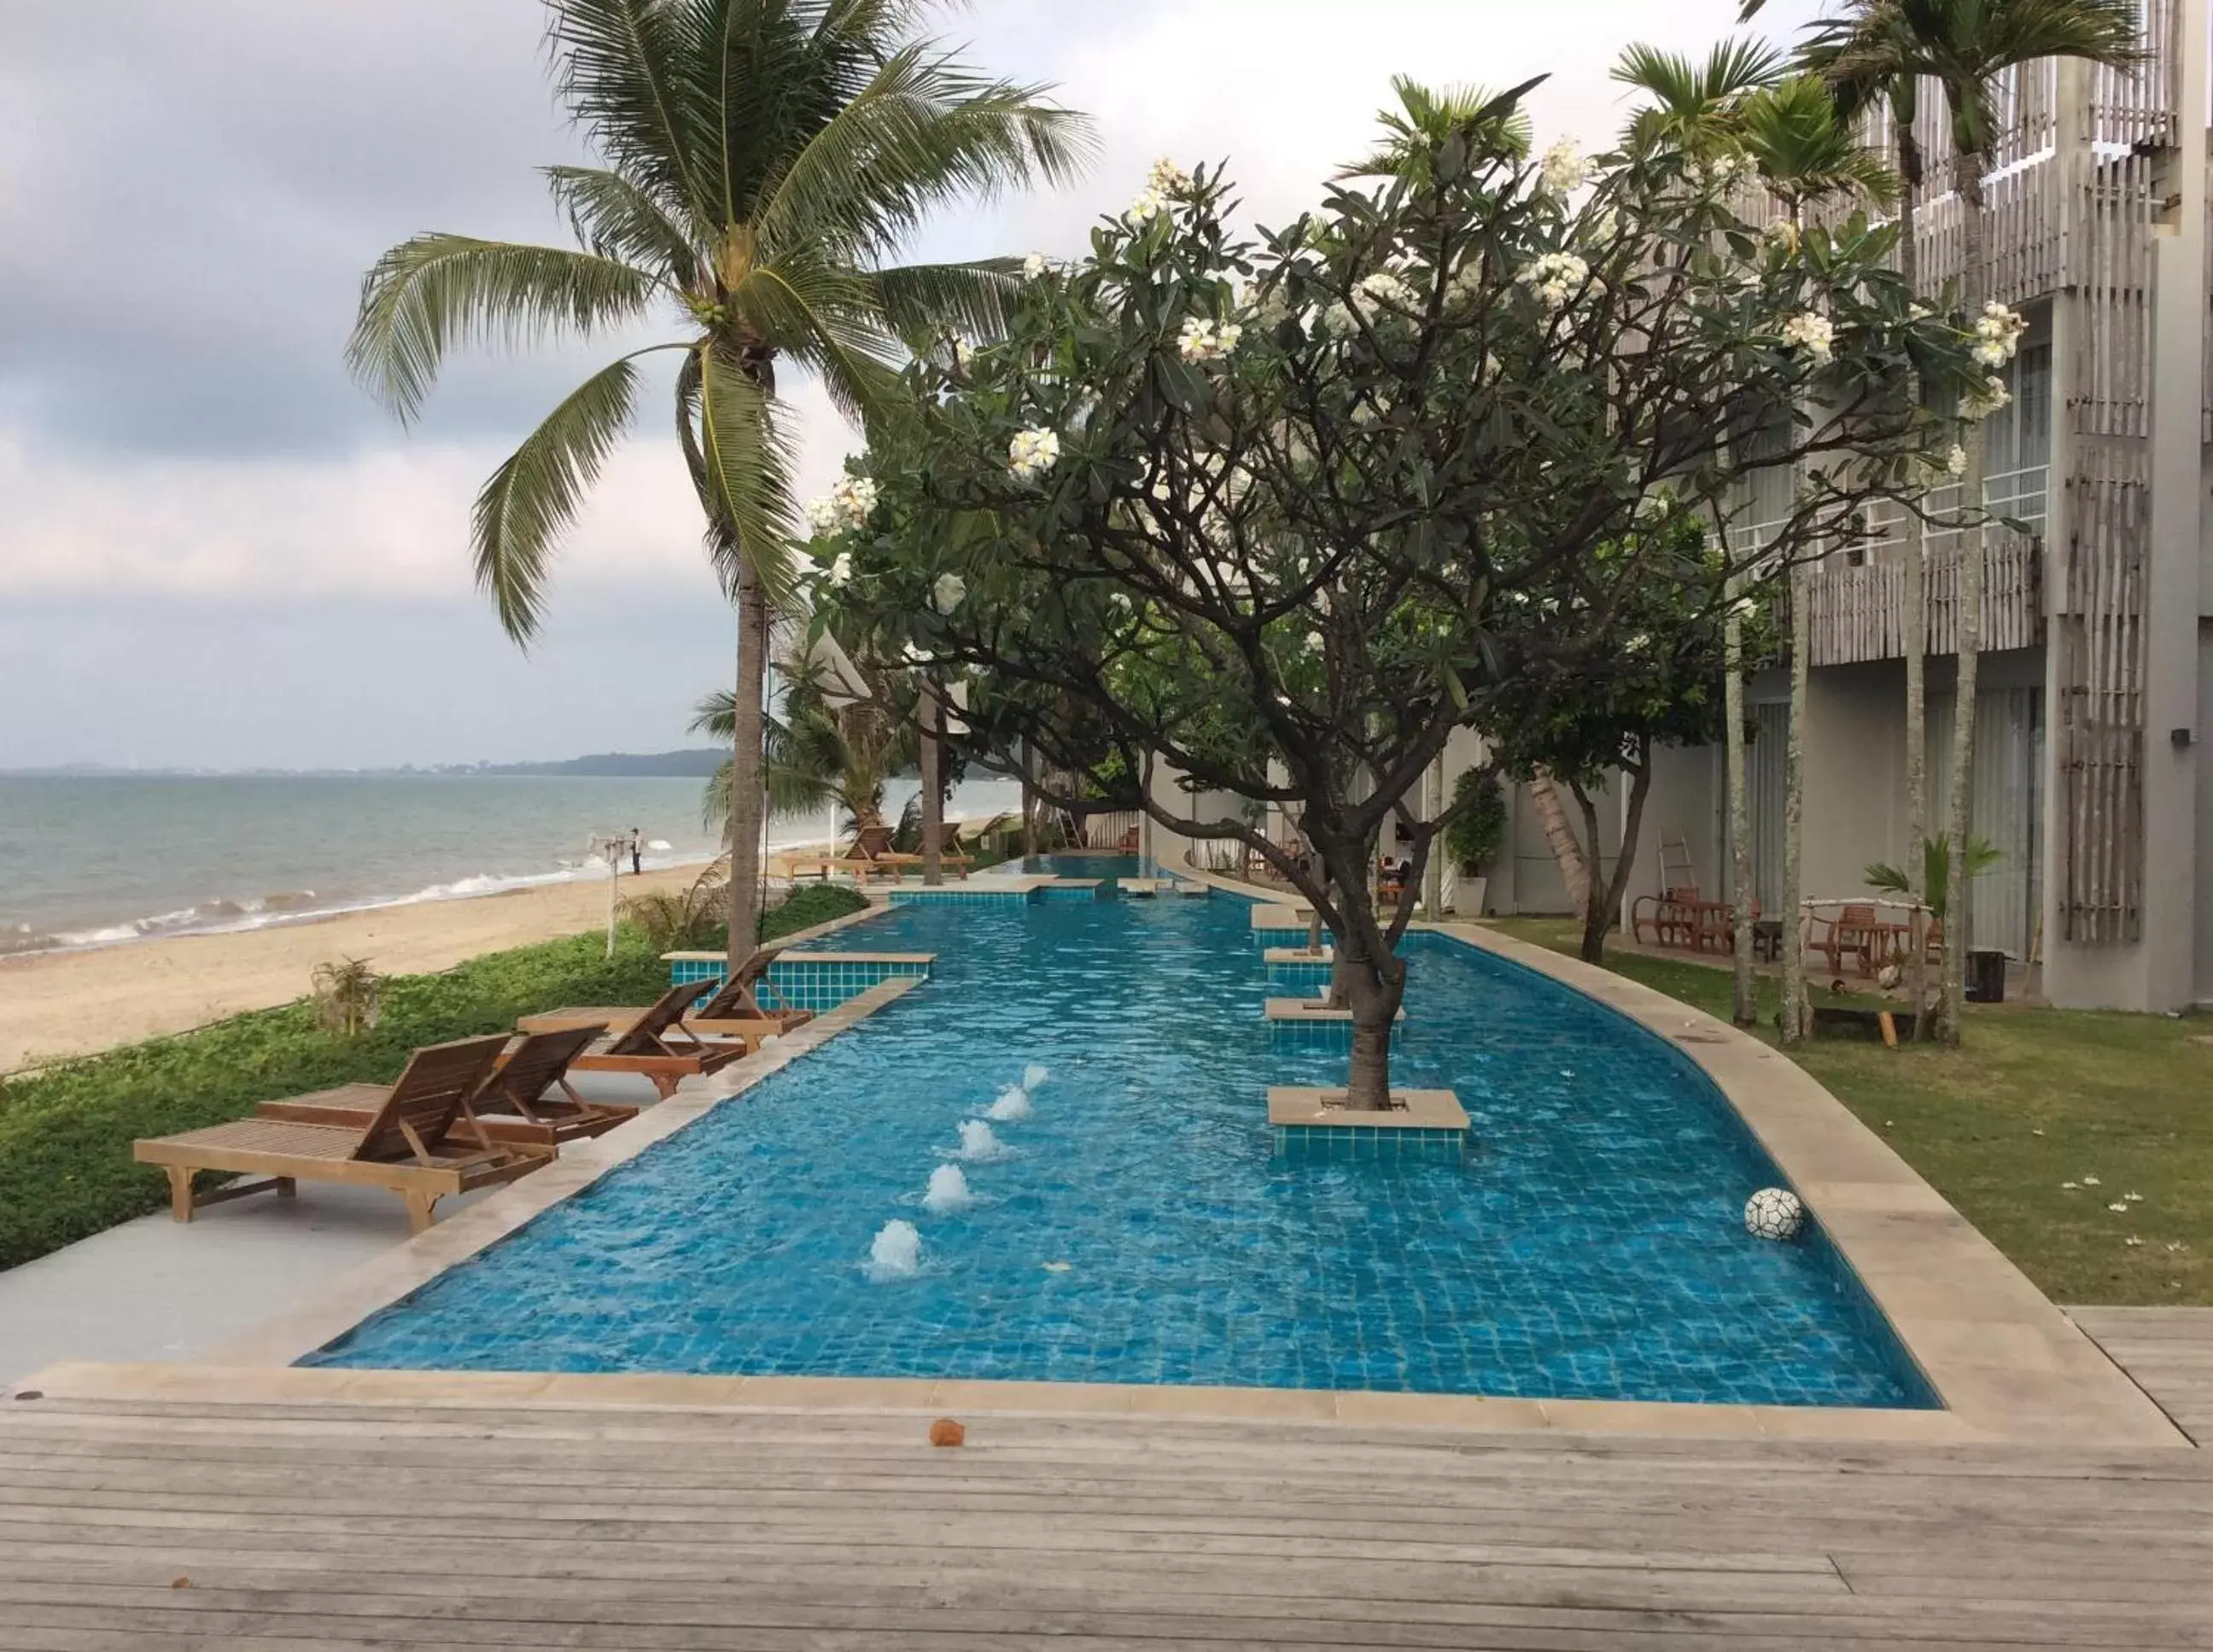 On site, Swimming Pool in Bari Lamai Resort